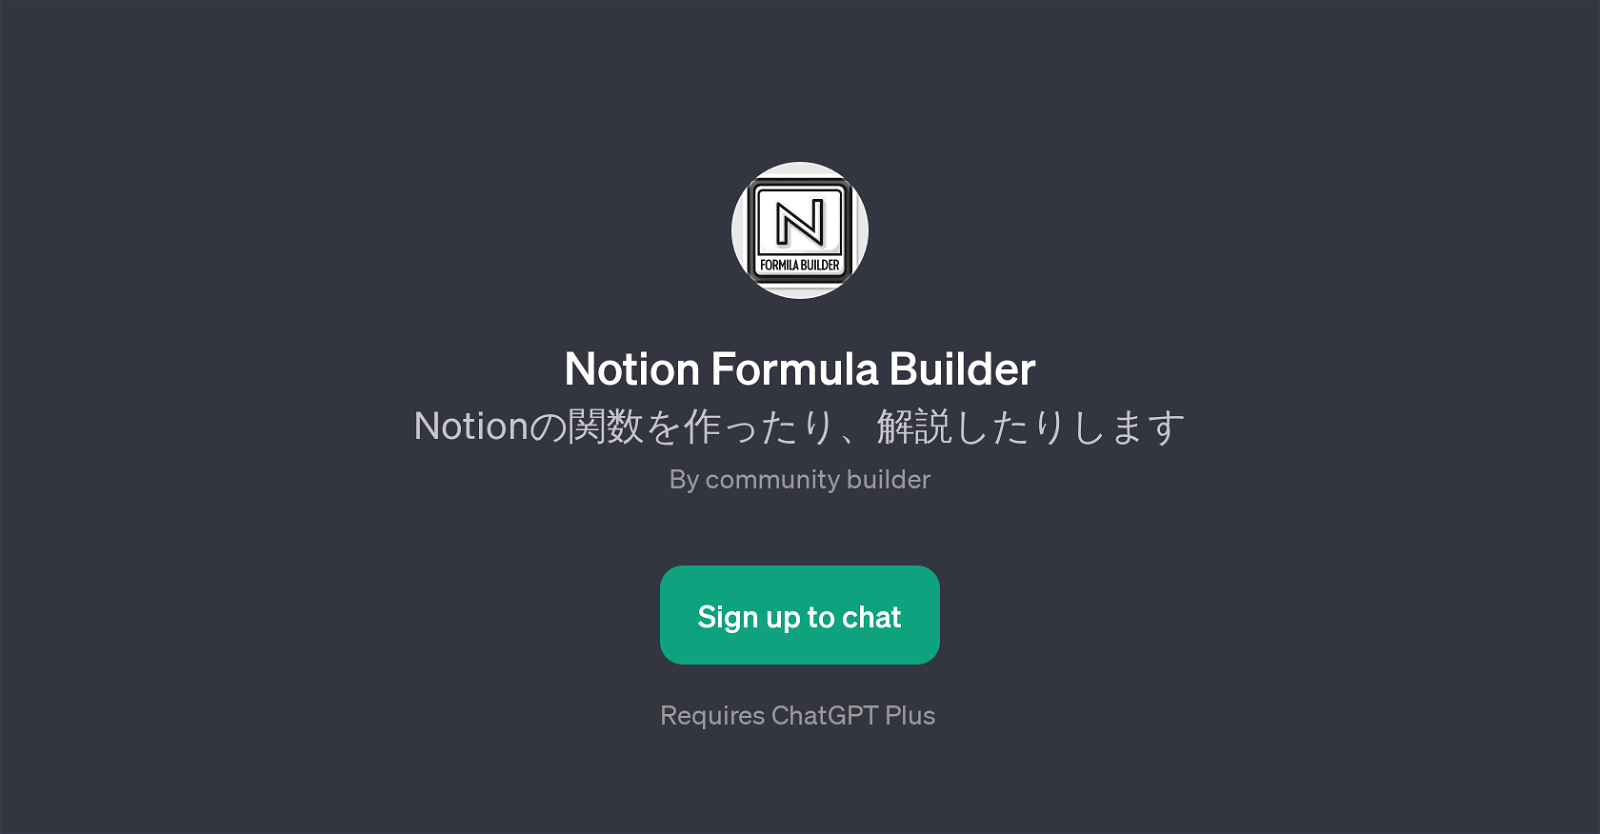 Notion Formula Builder website